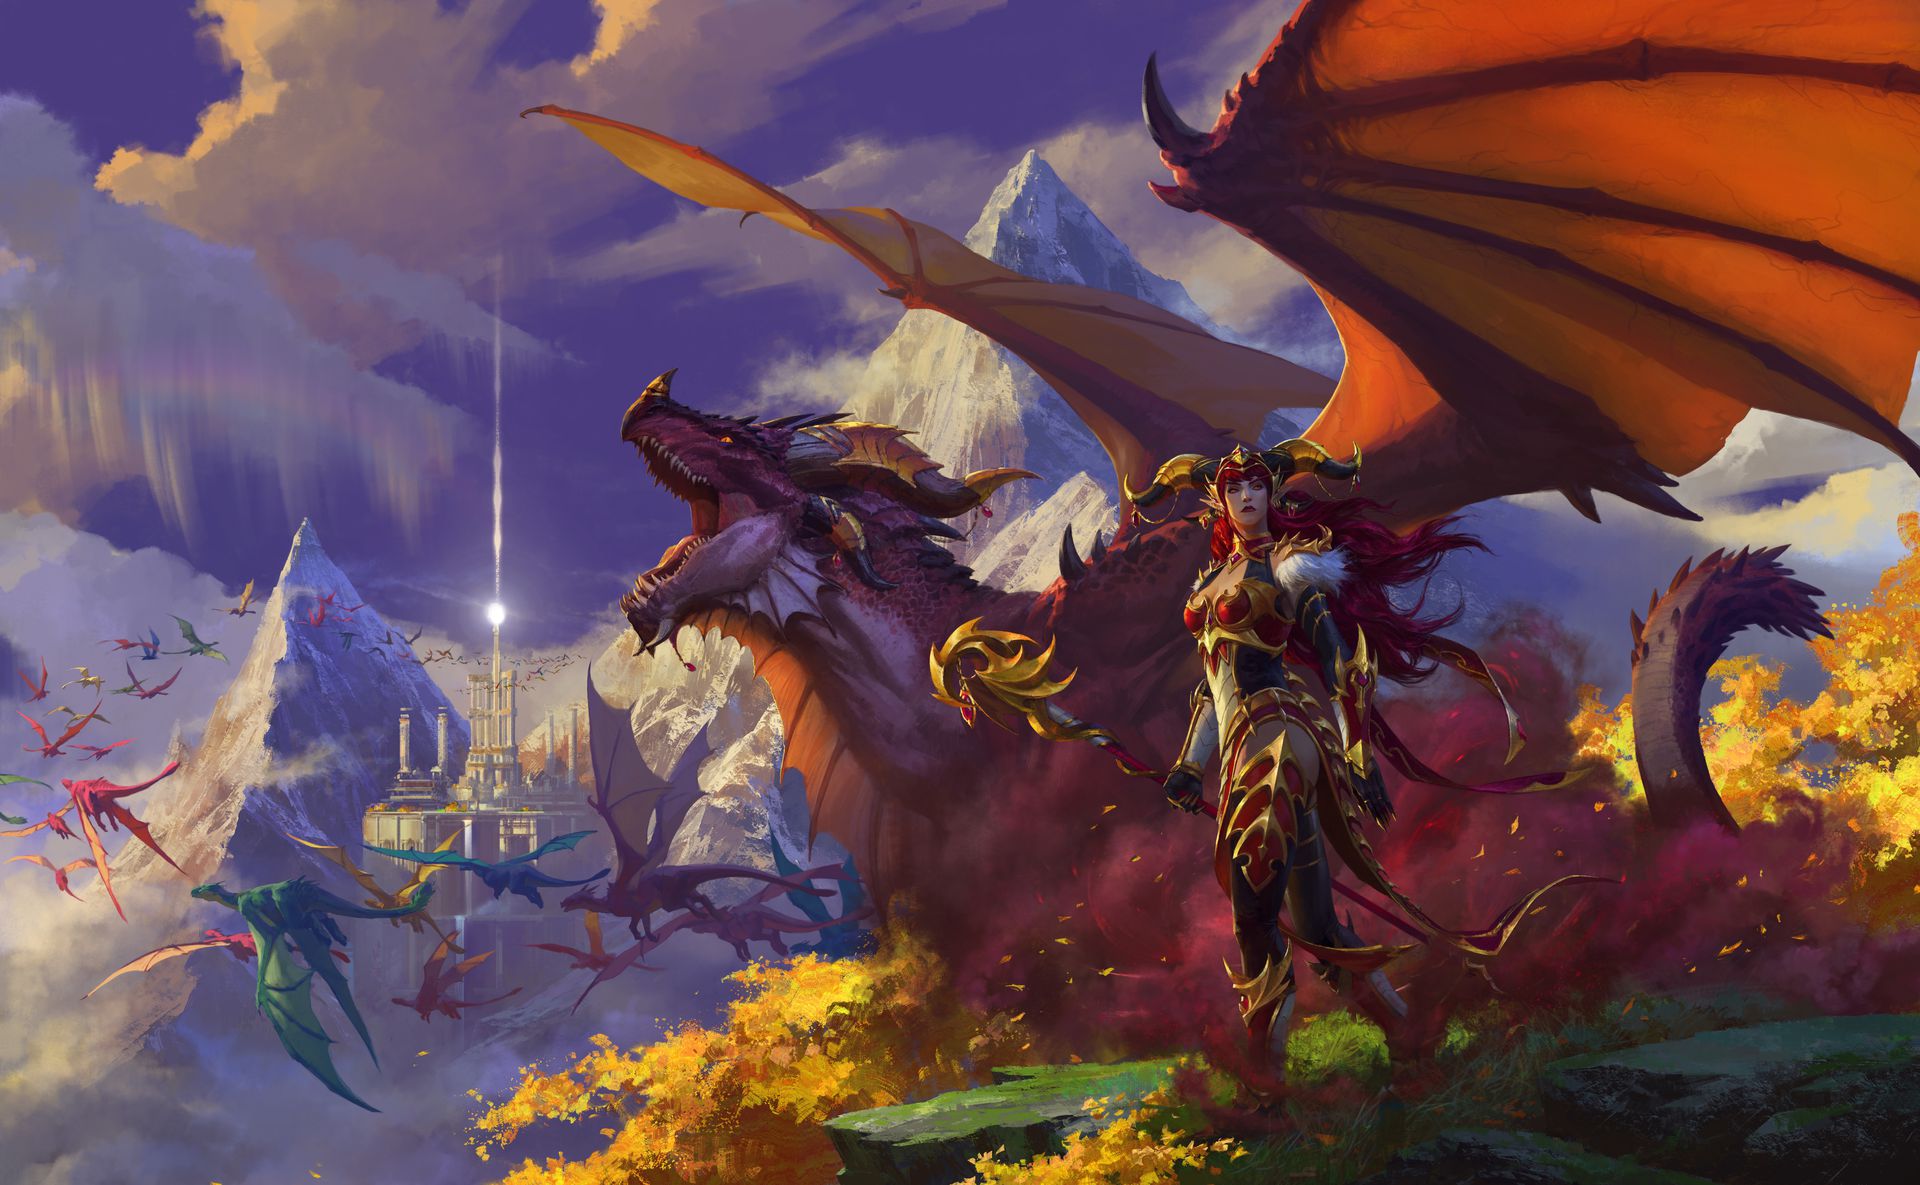 Arte clave de la expansión Dragonflight de World of Warcraft de Blizzard